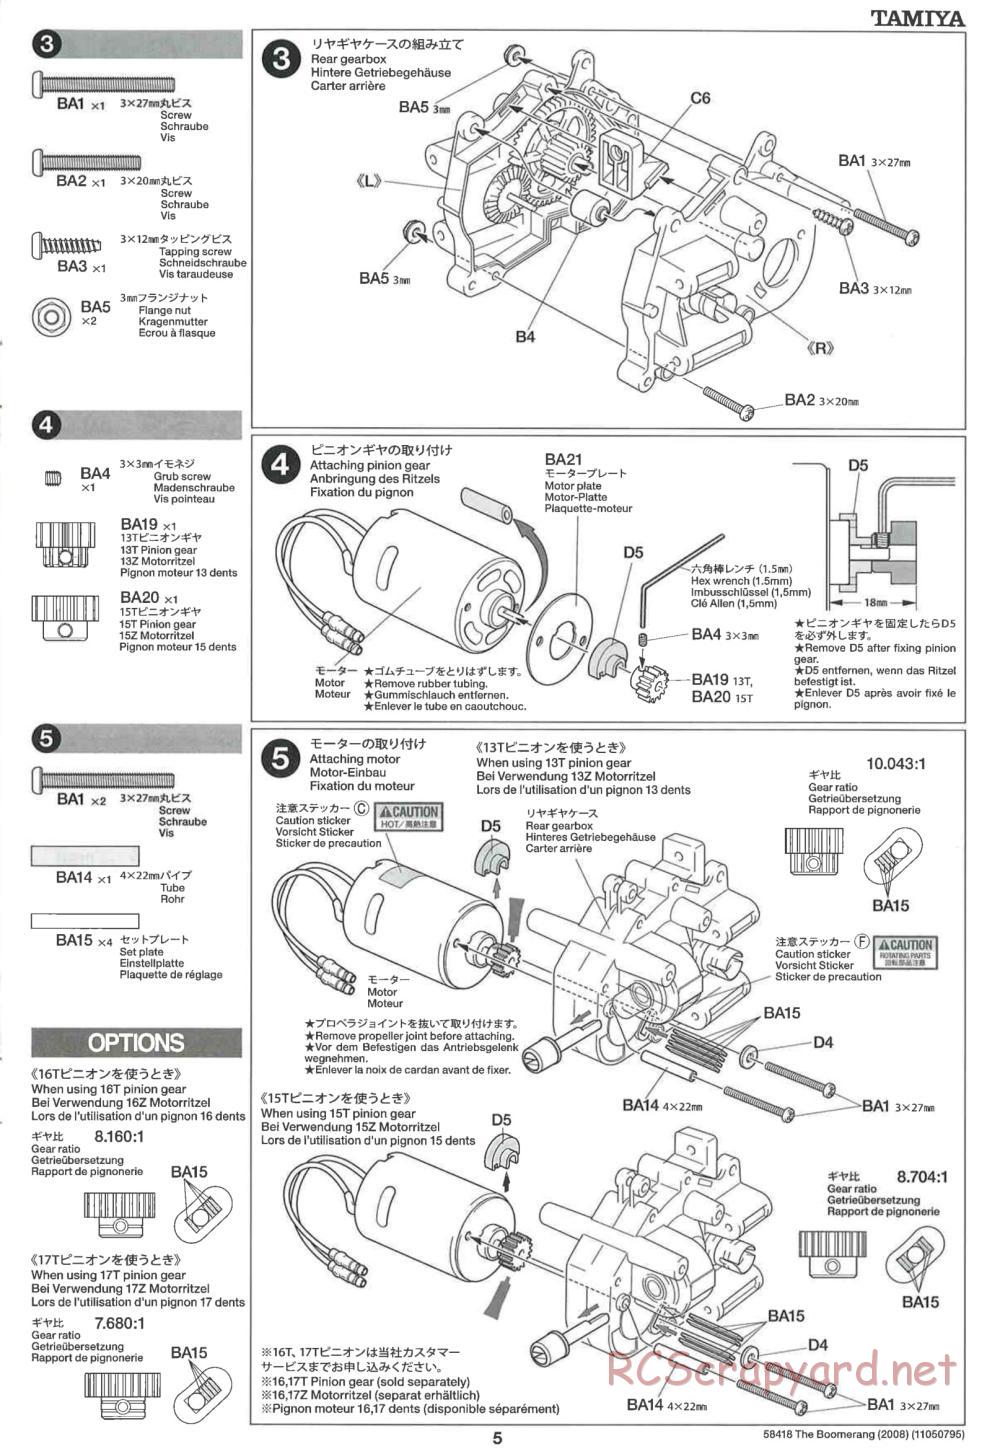 Tamiya - The Boomerang 2008 Chassis - Manual - Page 5